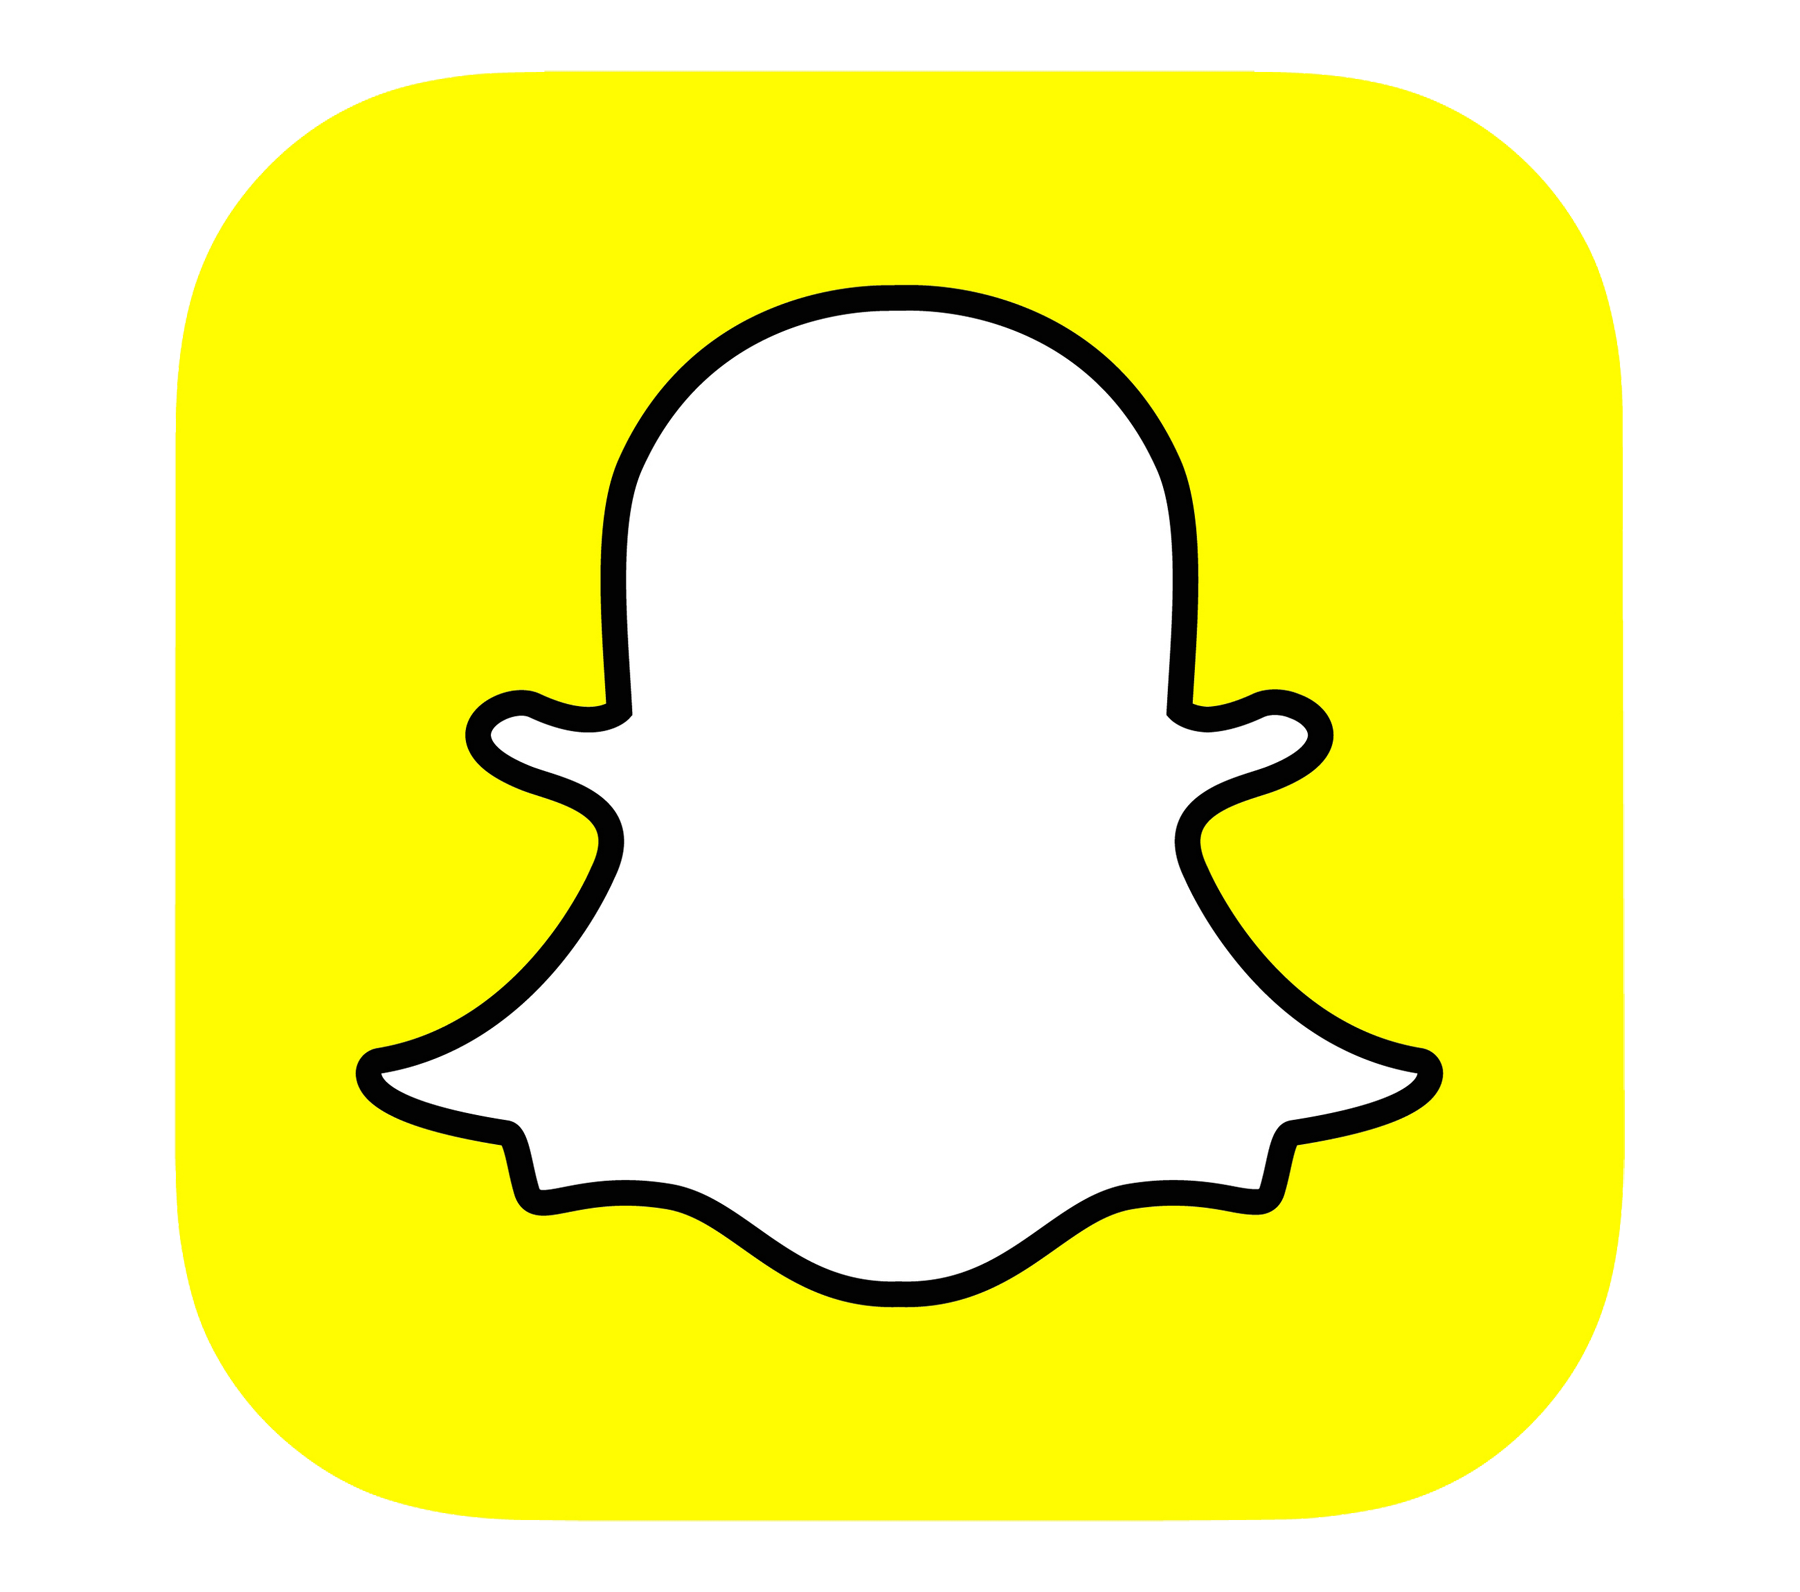 Snap Inc. Snapchat Computer Icons - snapchat png download - 1024*1024 ...